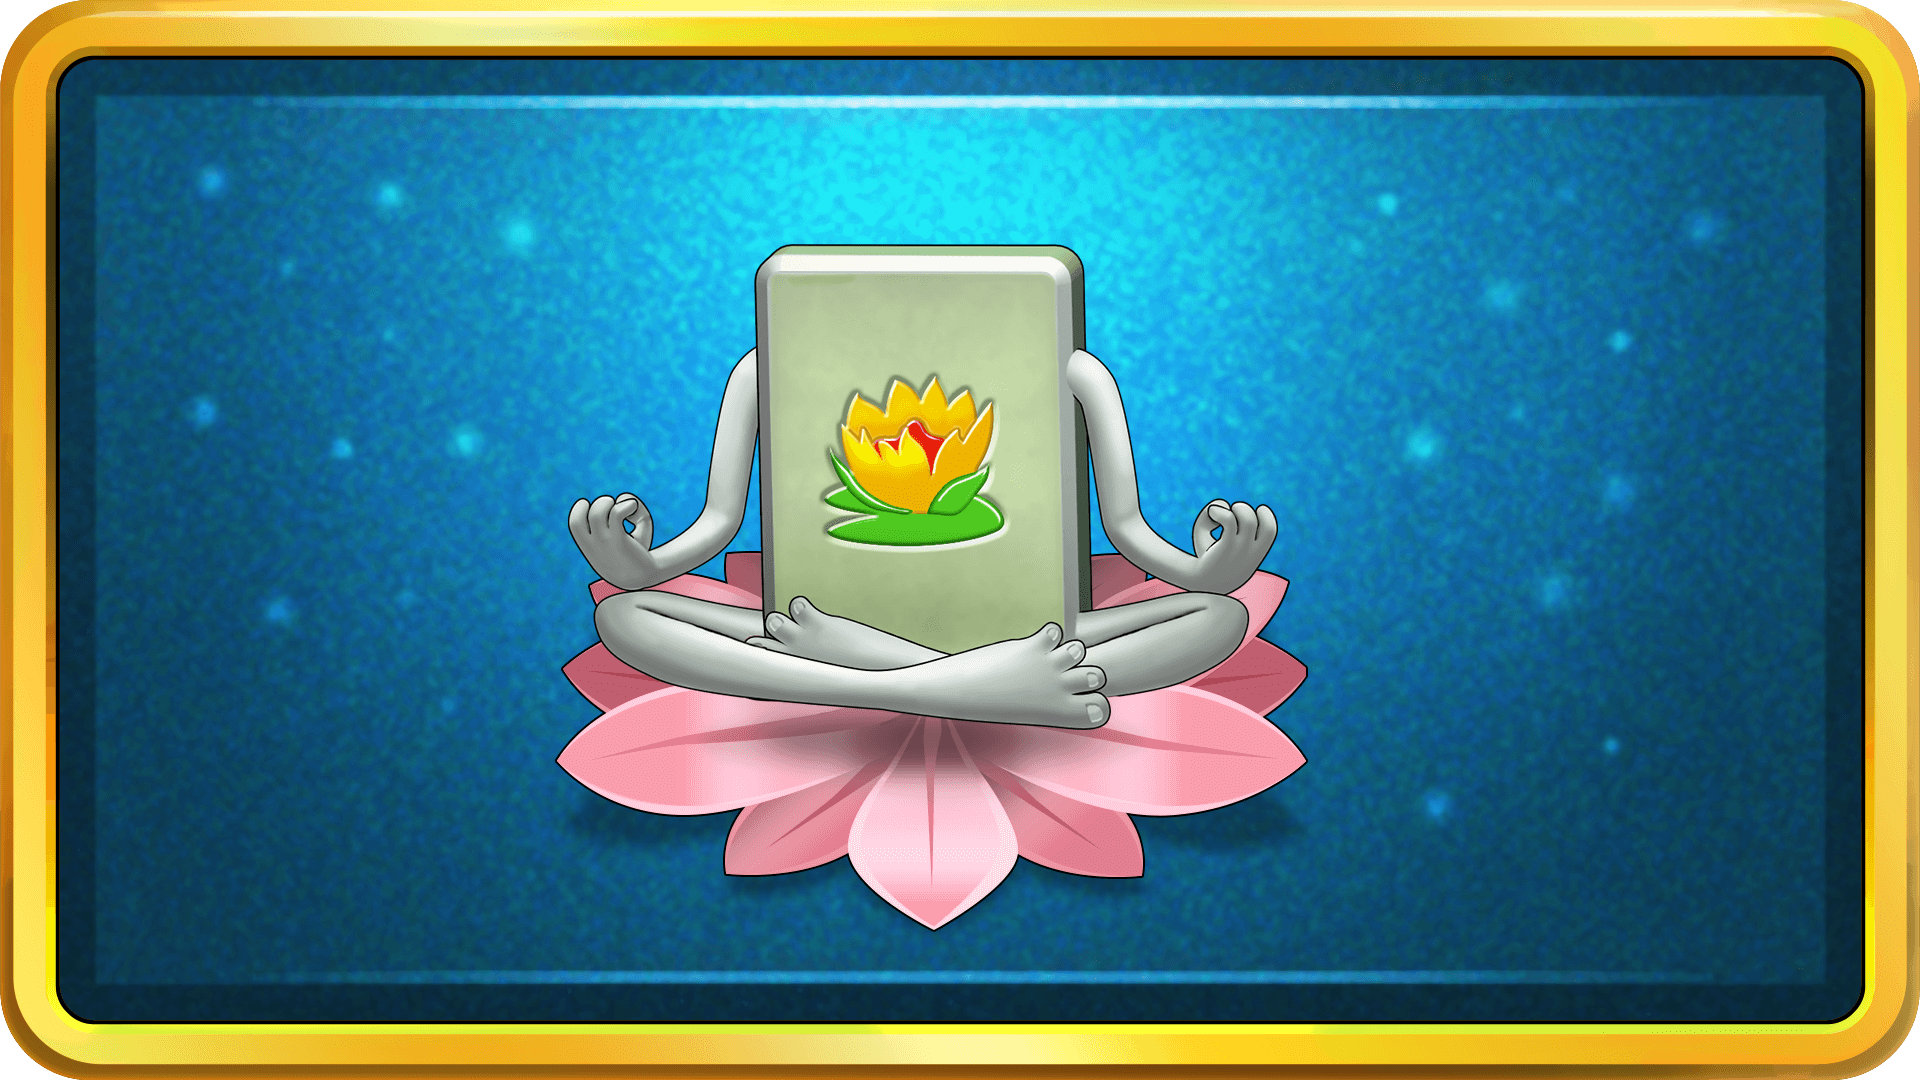 Icon for Zen Master